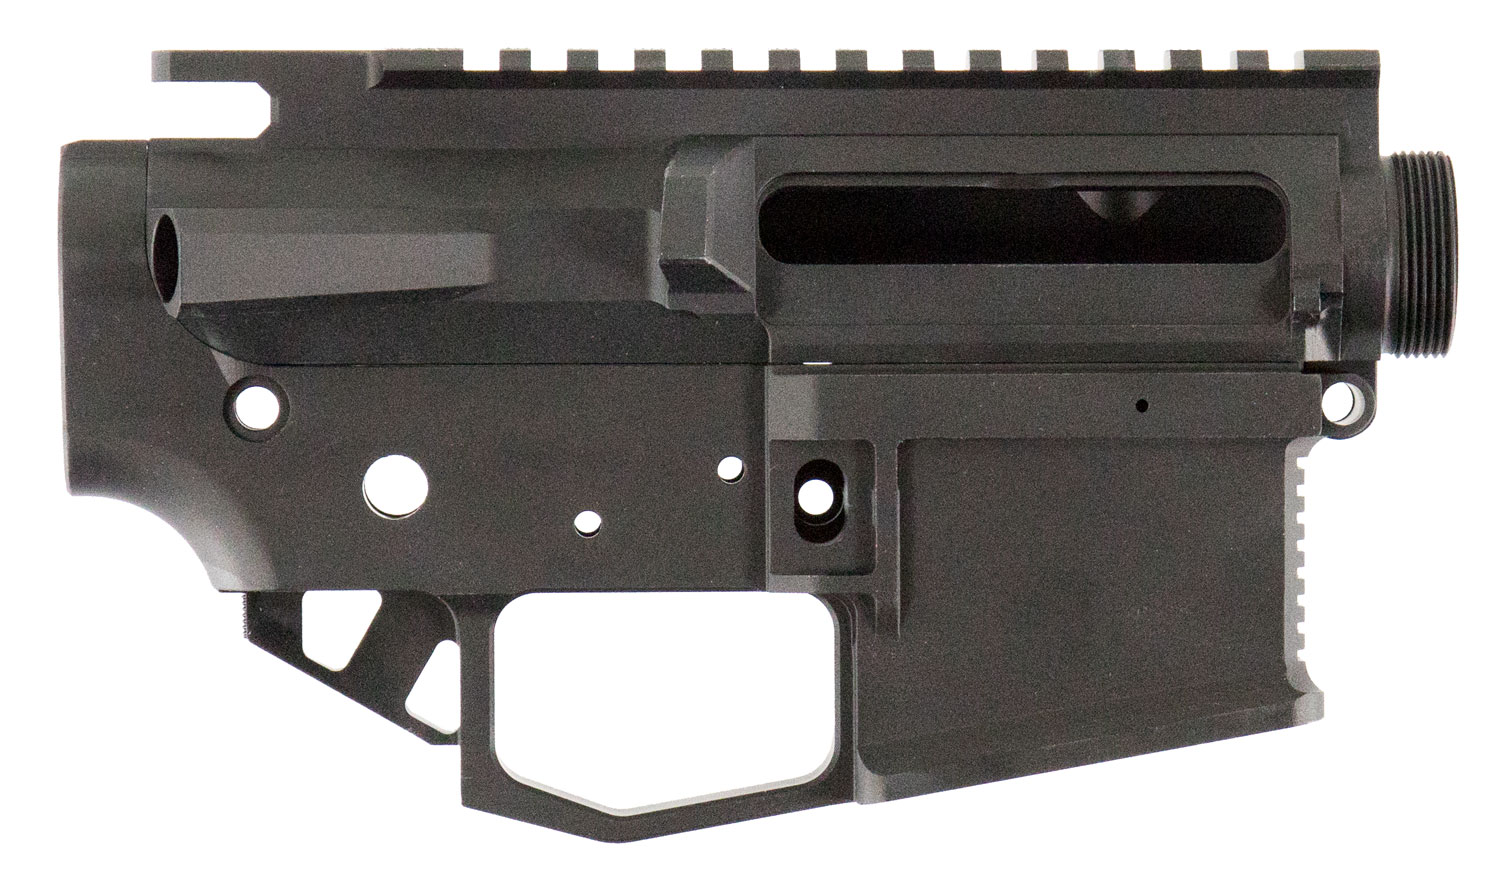 Rise Armament STR2BLK Striker AR15 Receiver 223 Remington/5.56 NATO Black Hardcoat Anodized